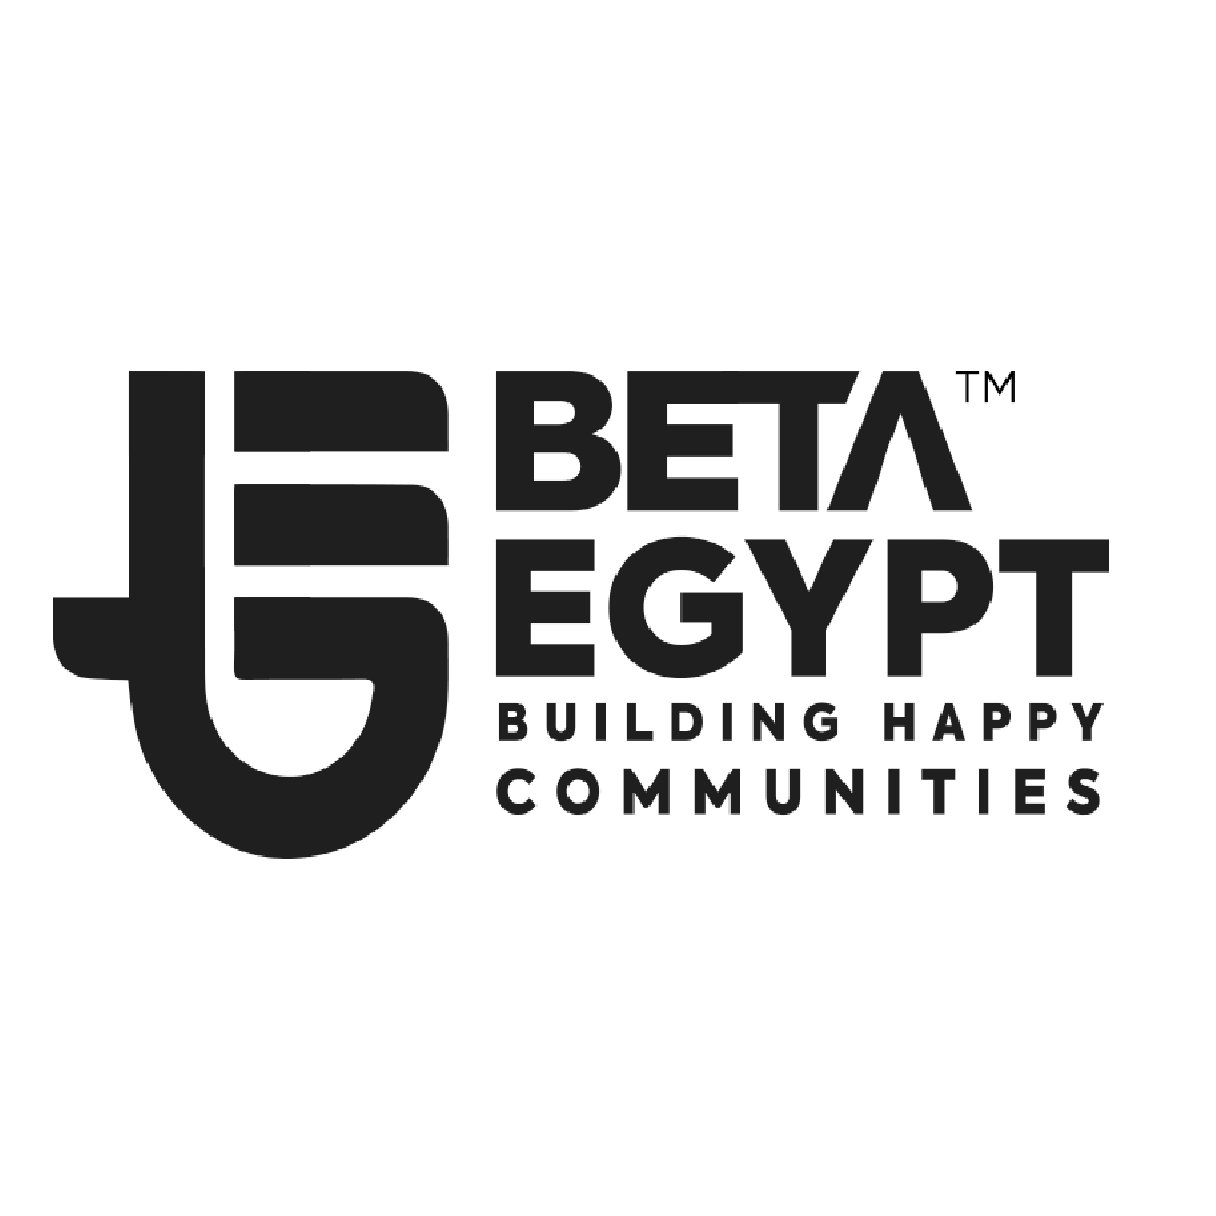 Beta Egypt